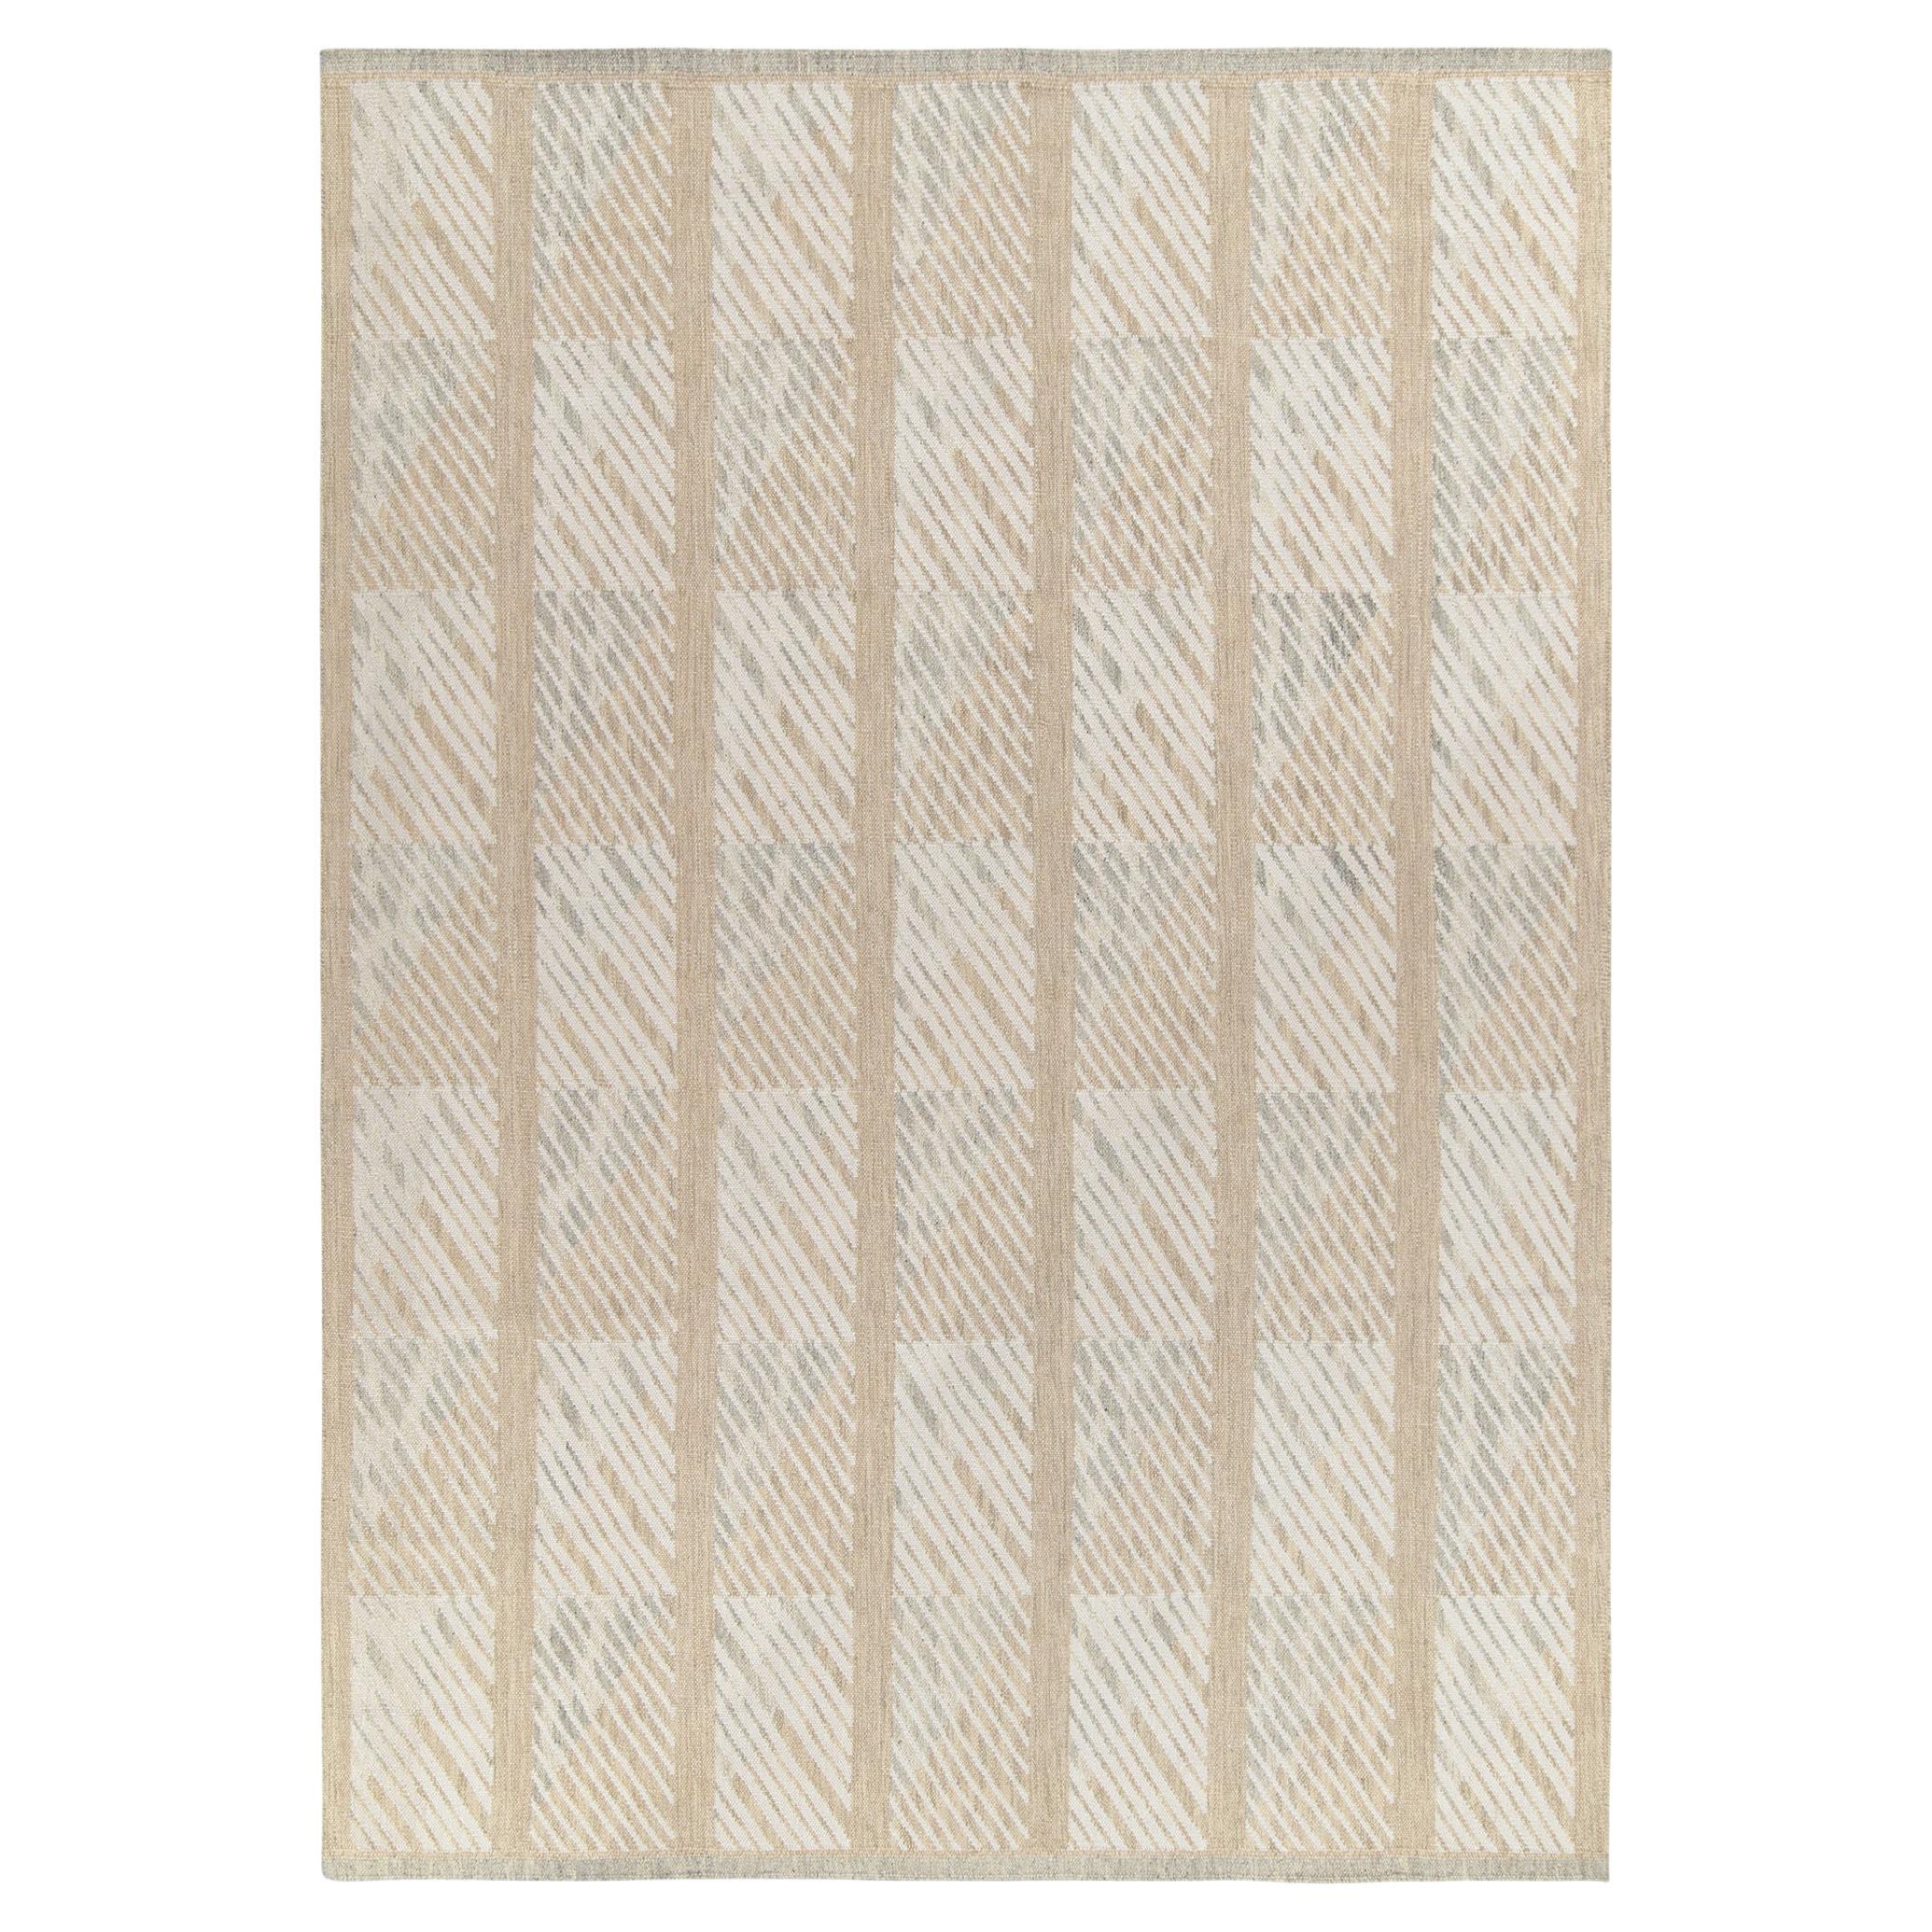 Tapis Kilim et tapis de style scandinave Kilim à motif géométrique blanc et beige